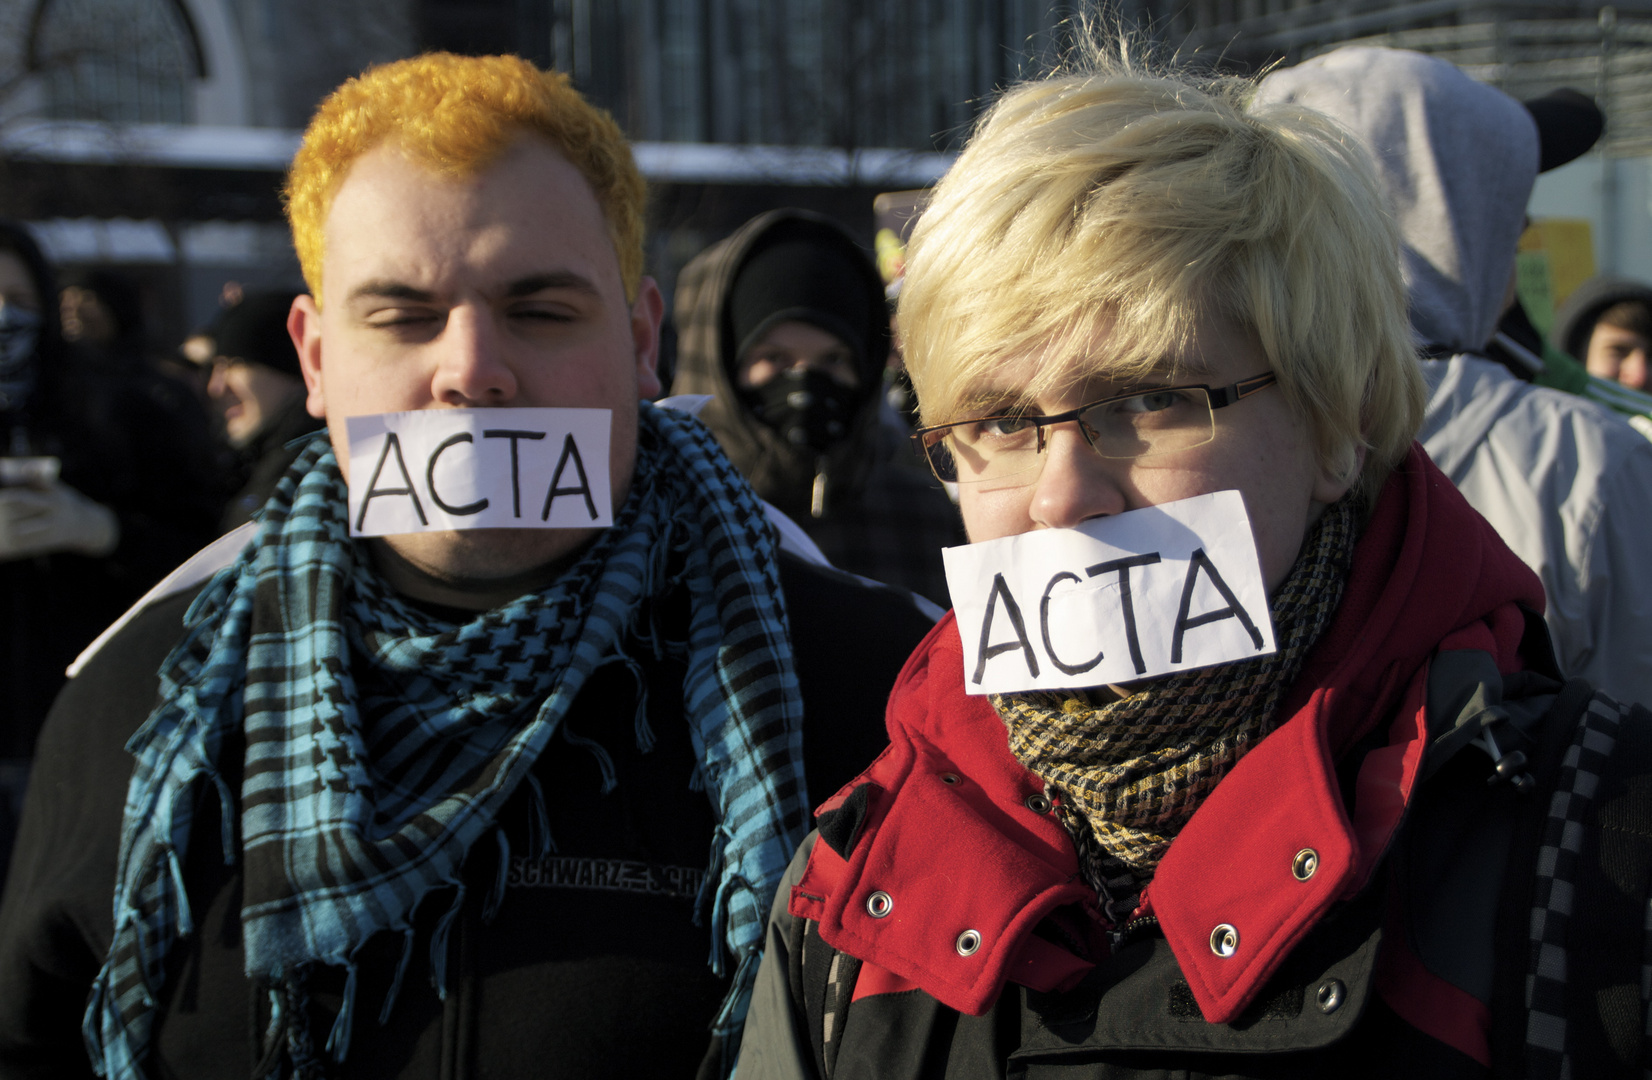 ACTA Demo Leipzig #1